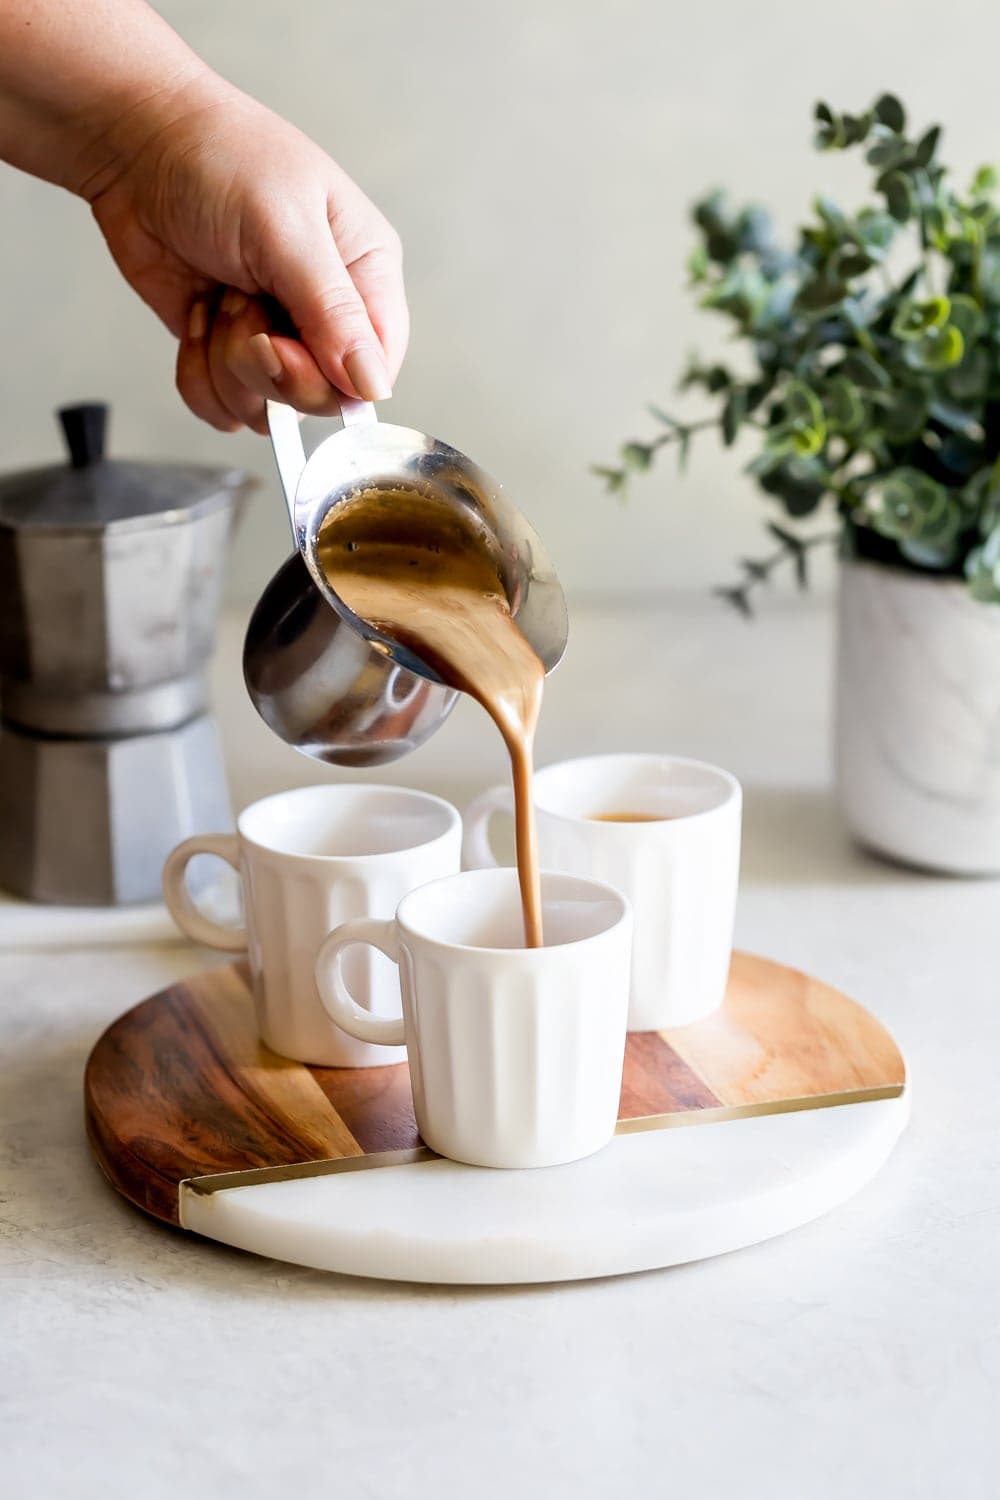 Nó bao gồm một ly espresso được làm ngọt bằng đường demerara trong khi ủ. Loại cà phê espresso này được tạo ra bằng cách pha cà phê rang sẫm màu hơn với đường, tạo ra bọt màu nâu nhạt trên cà phê. Cà phê espresso kiểu Cuba được coi là tiêu chuẩn vào giữa buổi chiều thường được phục vụ cùng với một ly nước. 